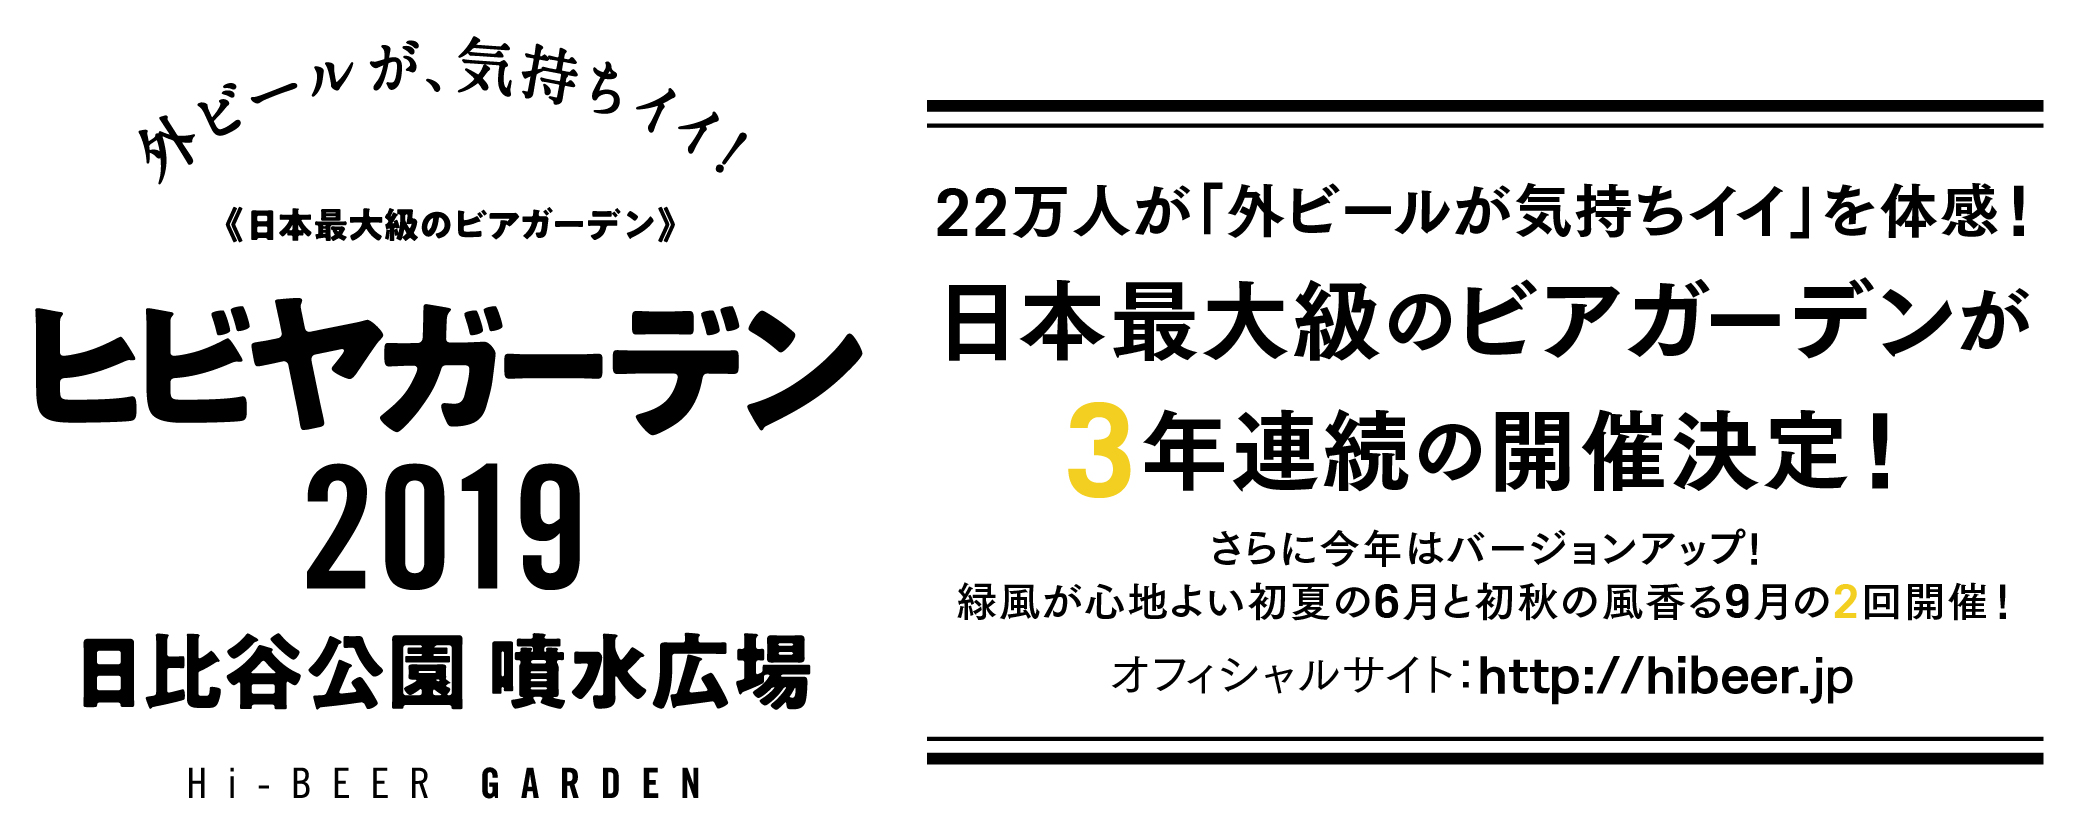 日本最大級のビアガーデン「ヒビヤガーデン2019」が詳細情報を発表